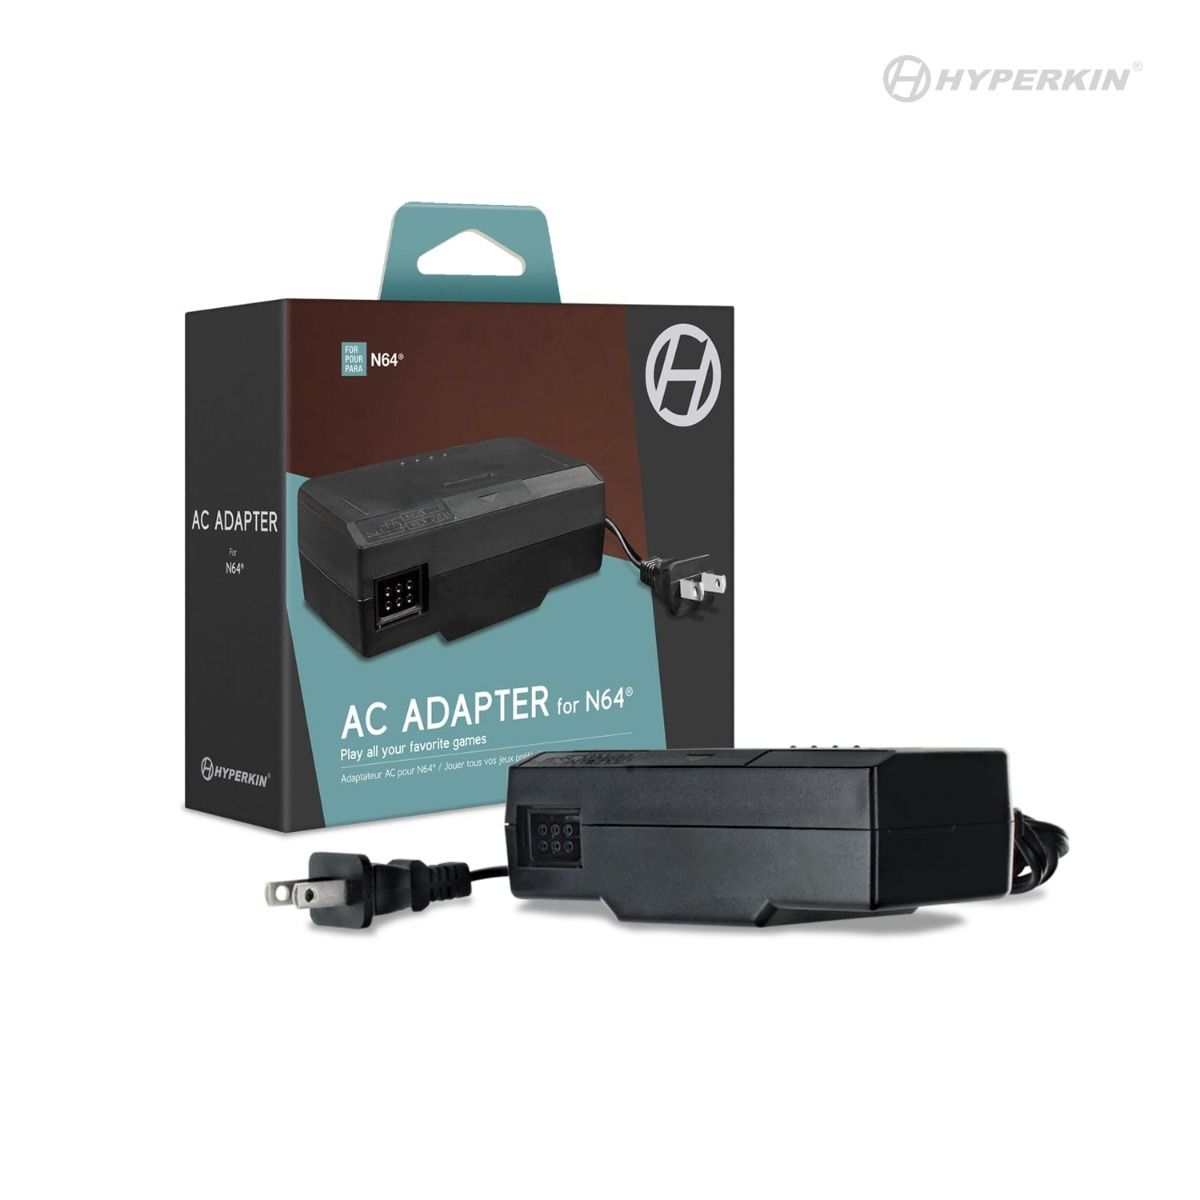 AC Adapter For N64 - Hyperkin Hyperkin